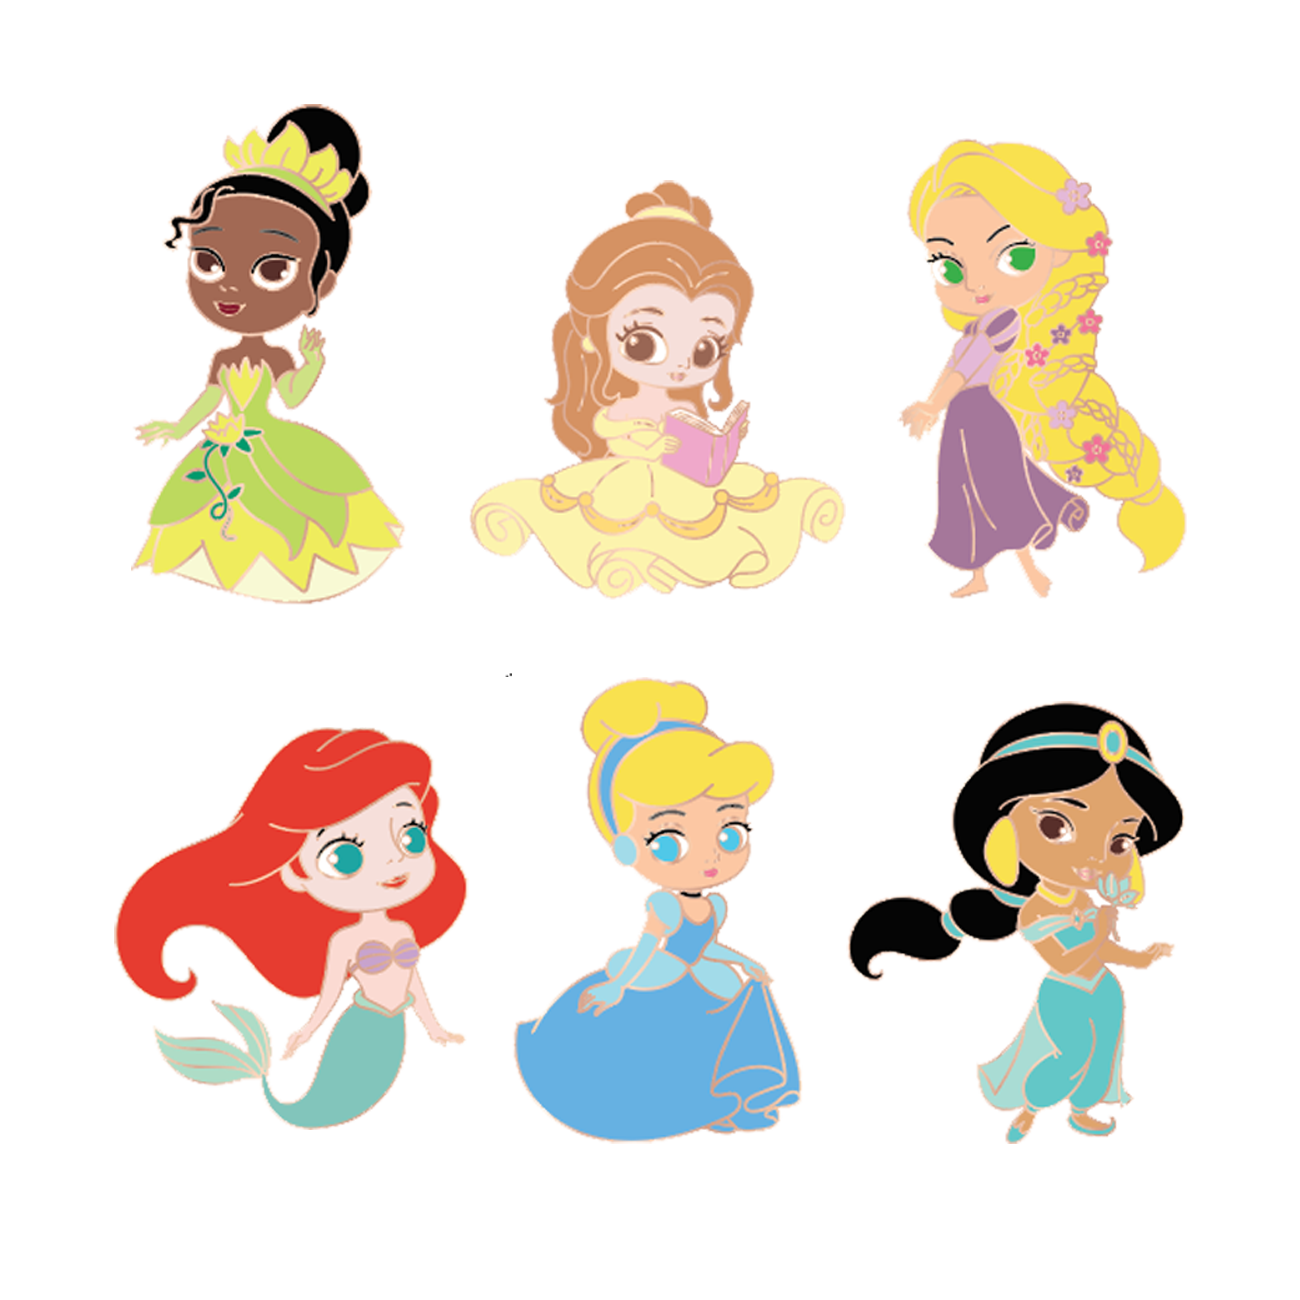 chibi disney princesses drawings